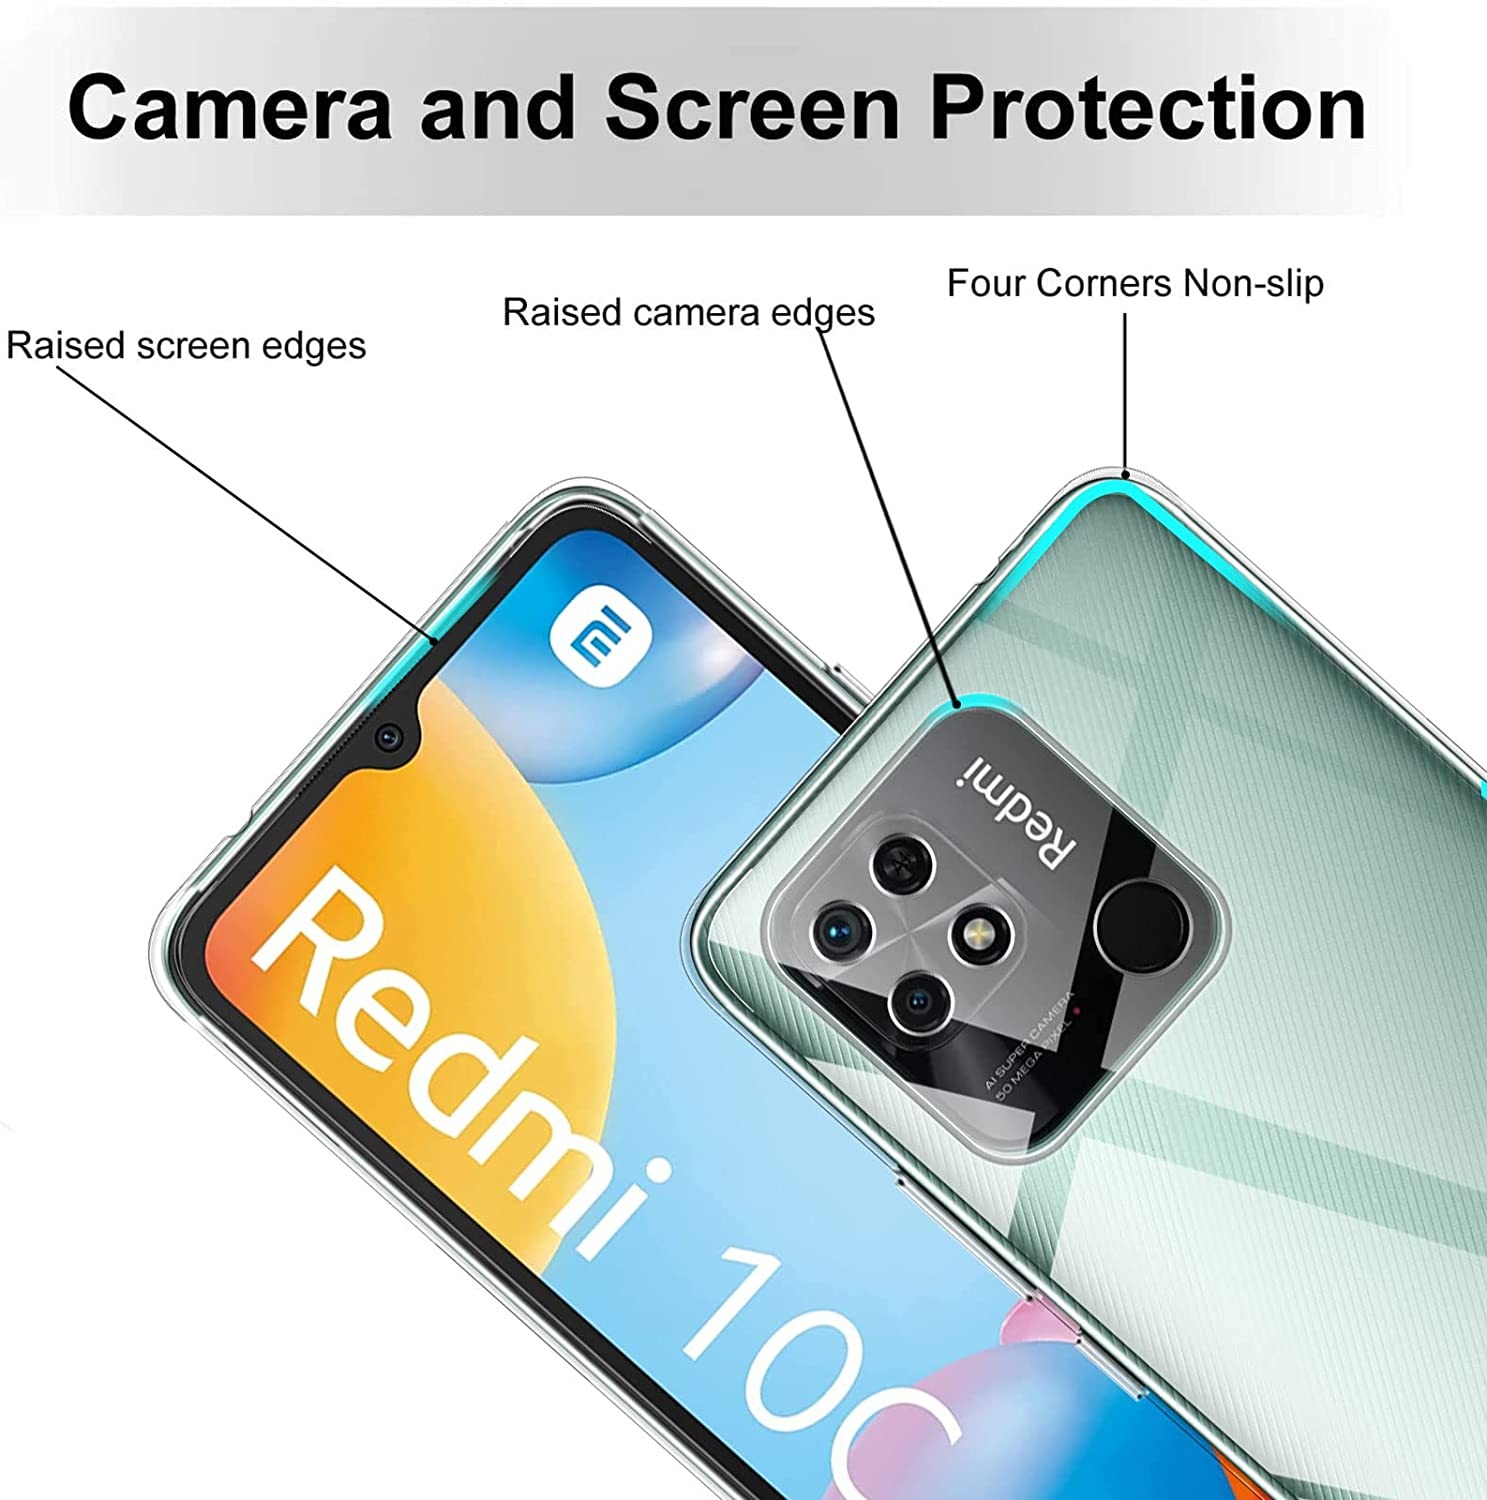 Ốp lưng silicon dẻo trong suốt mỏng 0.6mm cho Xiaomi Redmi 10C hiệu Ultra Thin độ trong tuyệt đối chống trầy xước - Hàng nhập khẩu